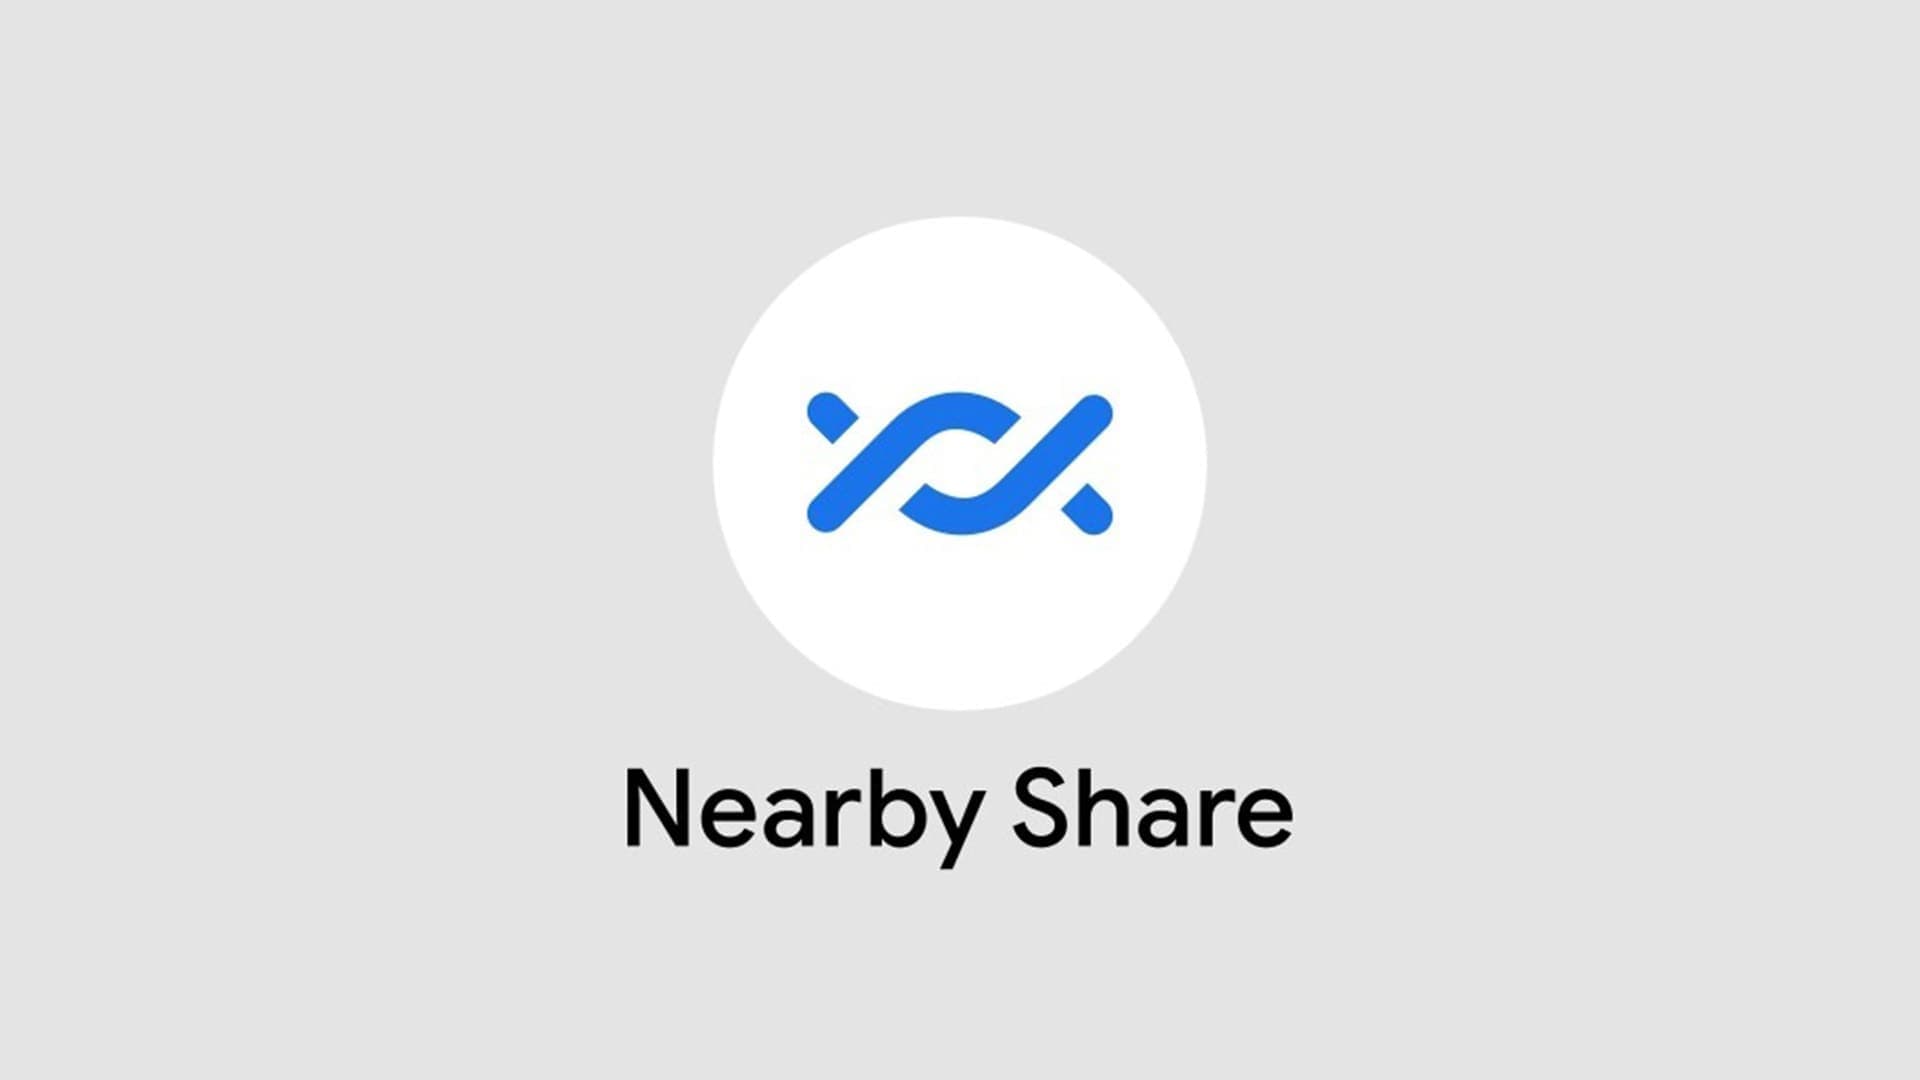 Google permetterà di condividere automaticamente file con Nearby Share senza richiedere il permesso